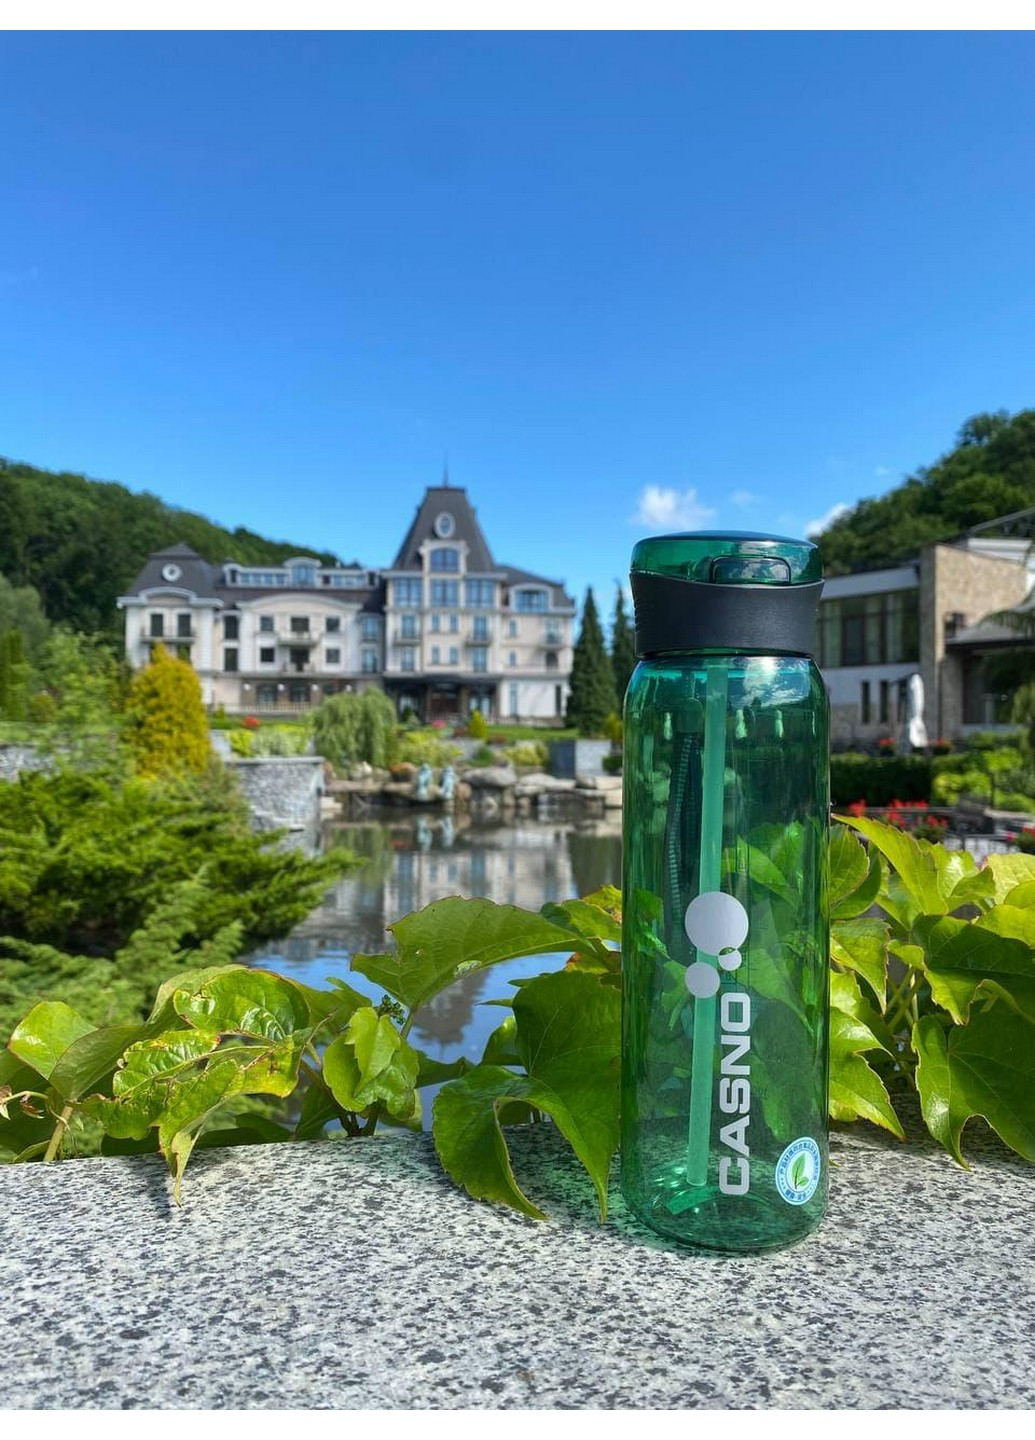 Бутылка для воды спортивная 600 мл. Casno зелёная